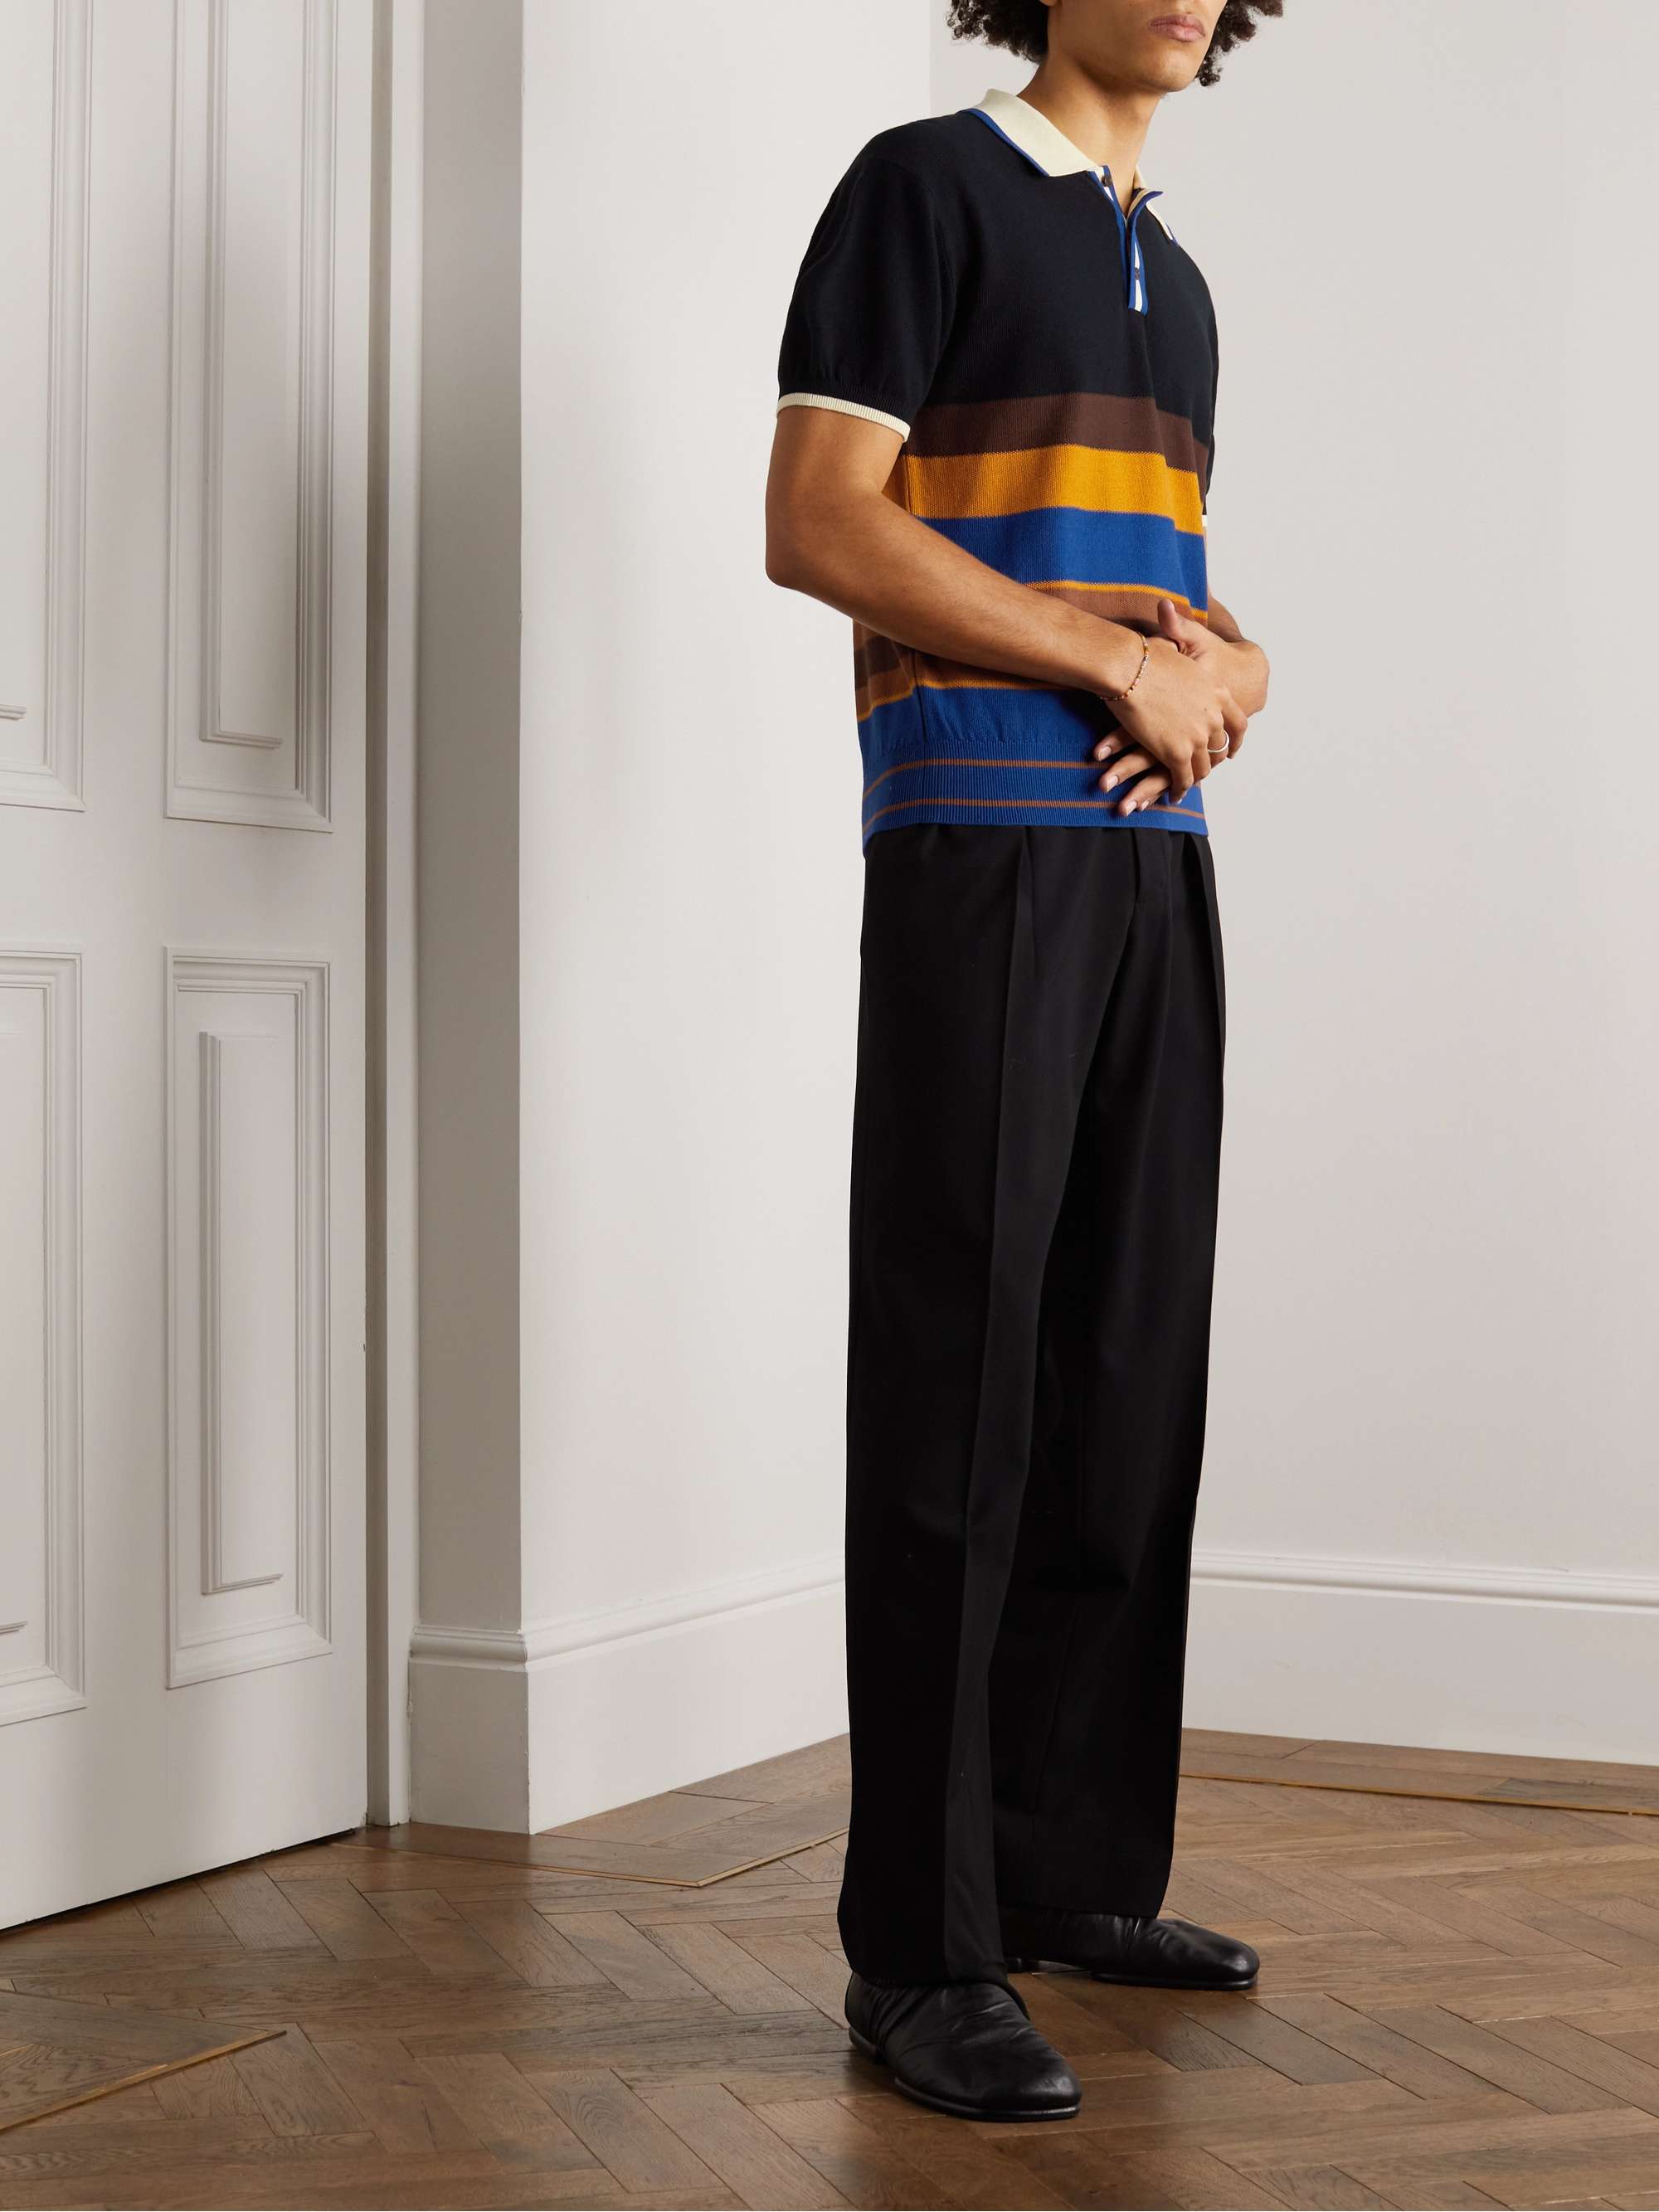 WALES BONNER Sun Striped Cotton-Jacquard Polo Shirt